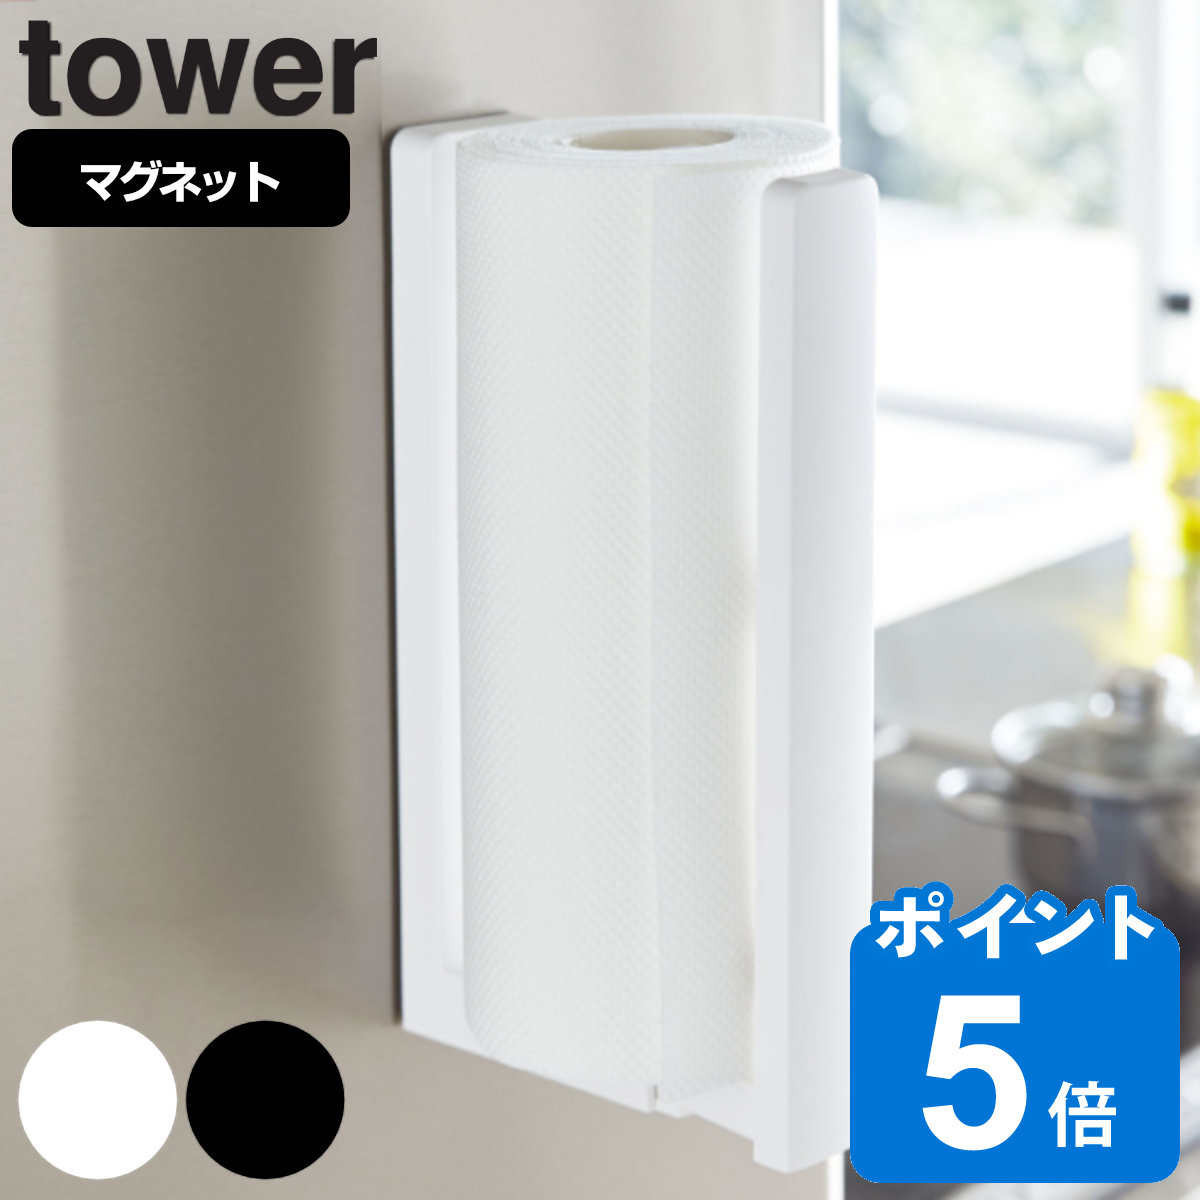 tower ストッパー付マグネットキッチンペーパーホルダー タワー